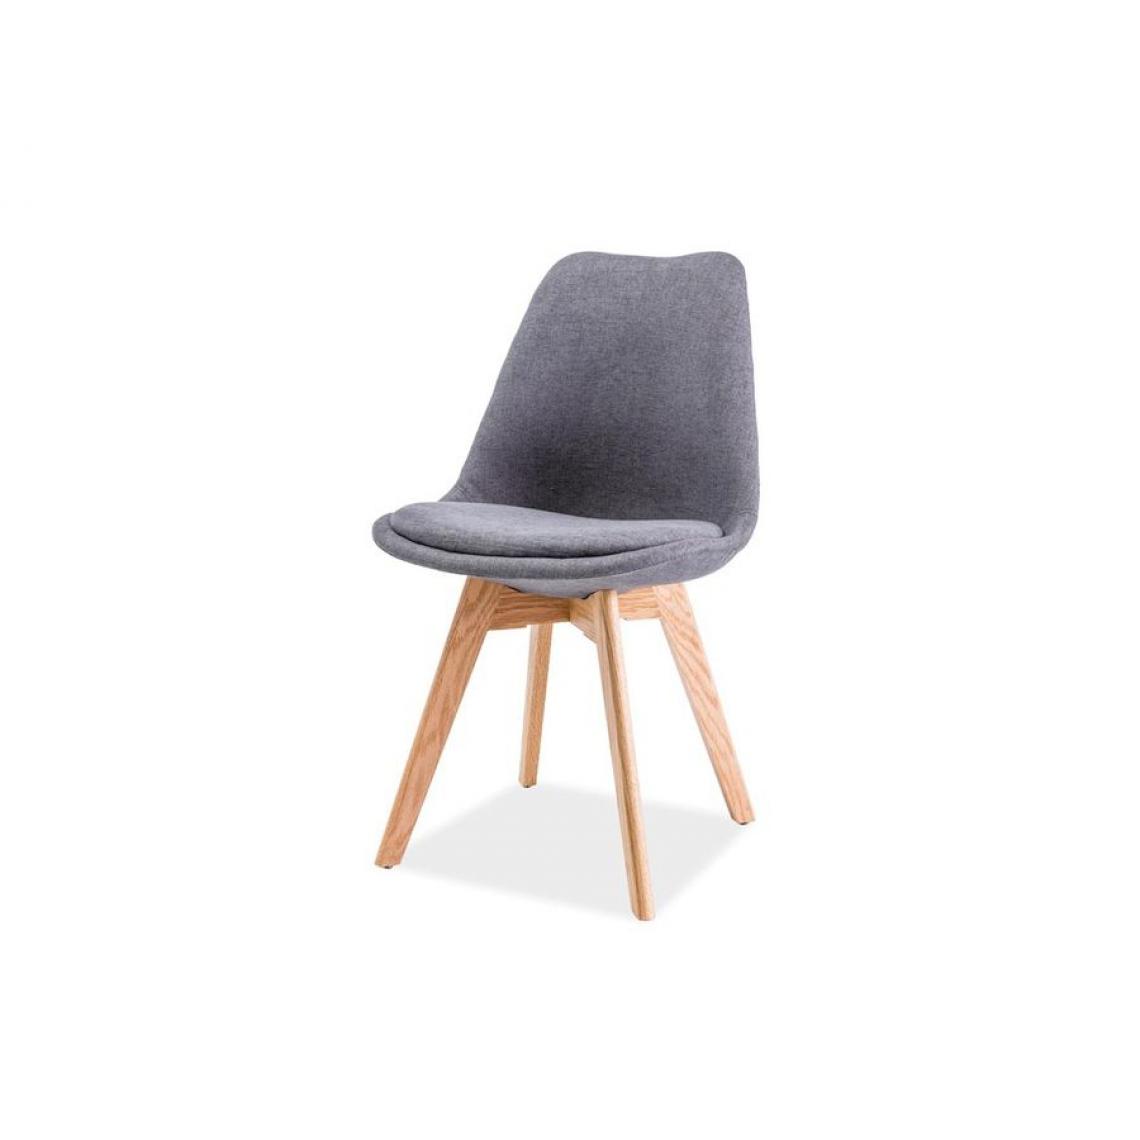 Hucoco - LEONIE | Chaise moderne avec pieds en bois | Dimensions : 83x50x40 cm | Rembourrage en tissu | Salle à manger Salon - Gris - Chaises